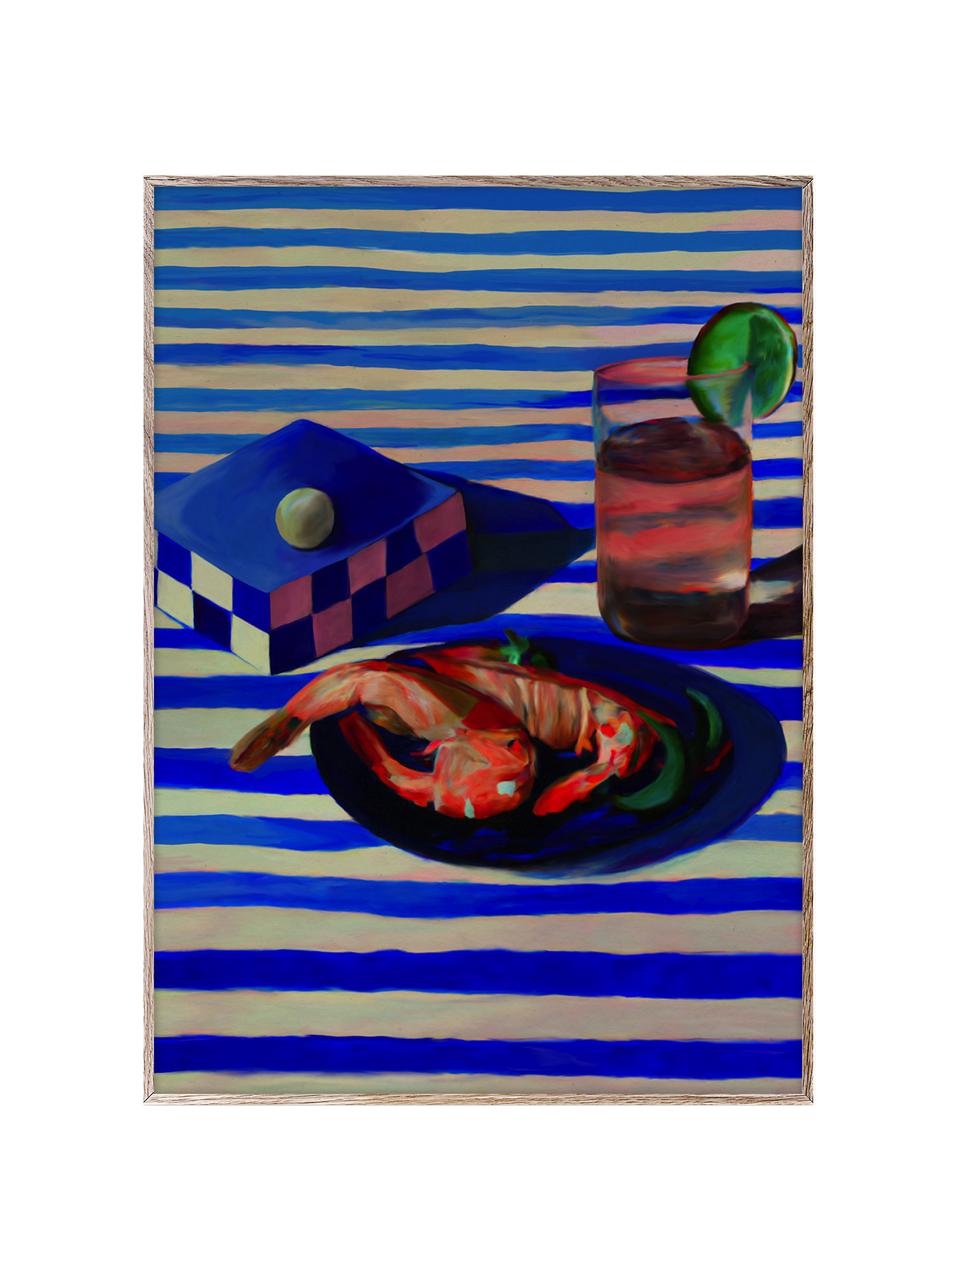 Plakat Shrimp & Stripes, 210 g matowy papier, druk cyfrowy z 10 farbami odpornymi na promieniowanie UV, Niebieski, koralowy, oliwkowy zielony, S 30 x W 40 cm